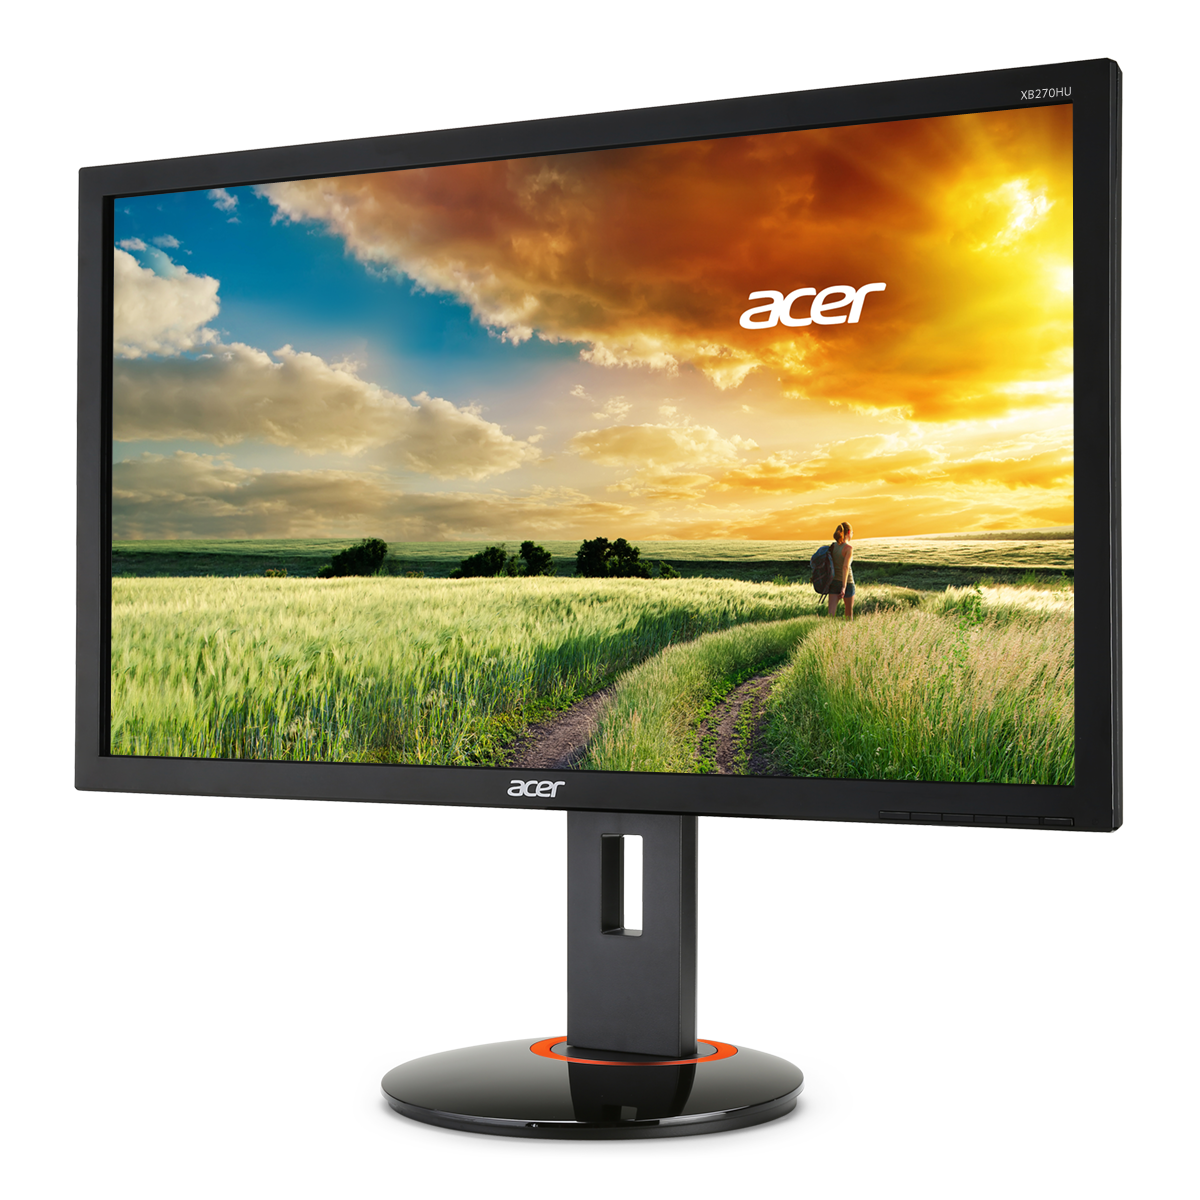 Immagine pubblicata in relazione al seguente contenuto: Acer America lancia i monitor gaming-oriented XB280HK e XB270H | Nome immagine: news21667_Acer-XB270H-Abprz_1.png